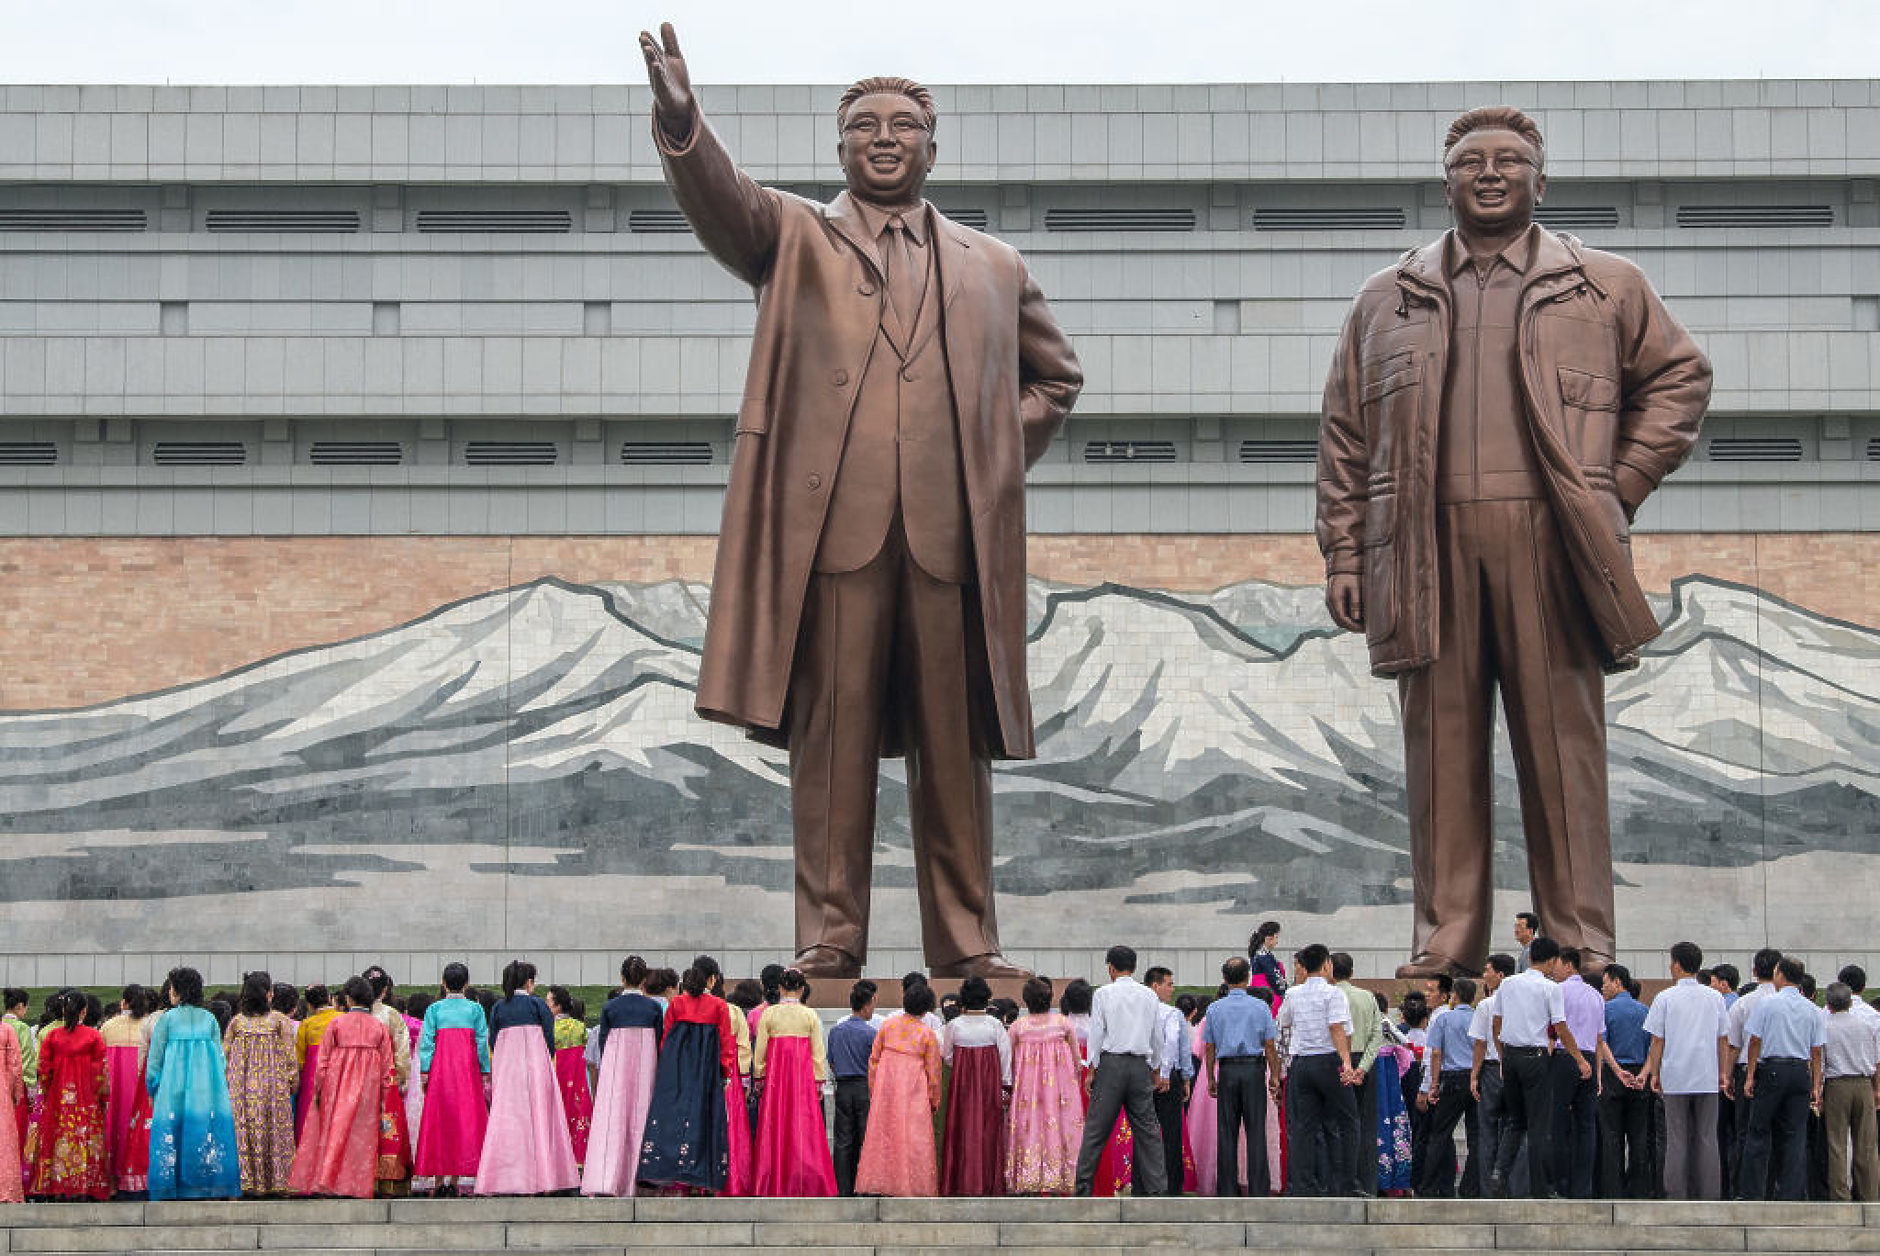 Северна Корея прекратява икономическото сътрудничество с Юга